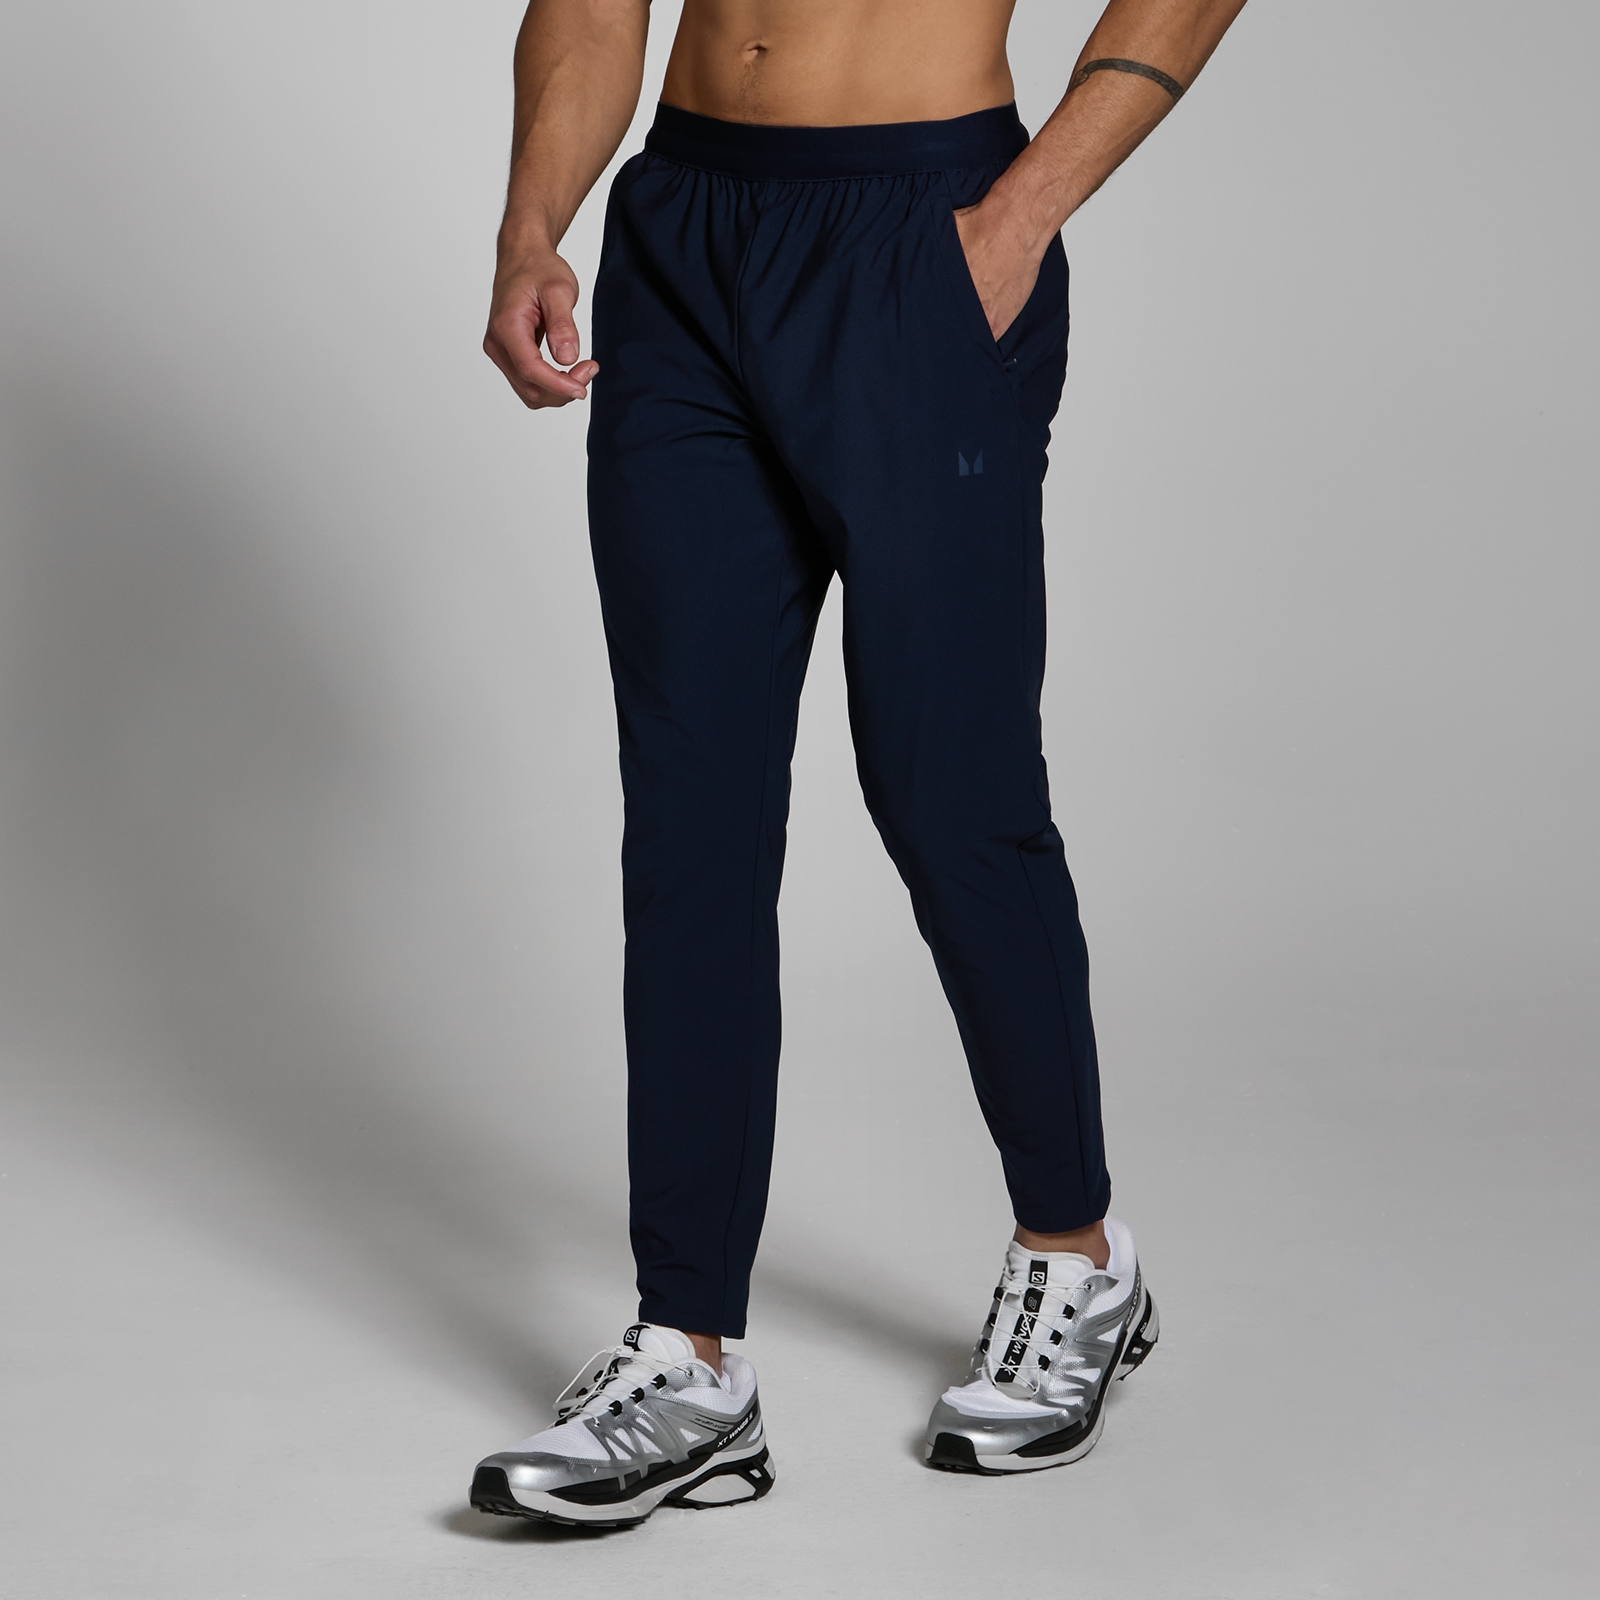 Image of Pantaloni da jogging in tessuto MP Lifestyle da uomo - Blu navy scuro - M